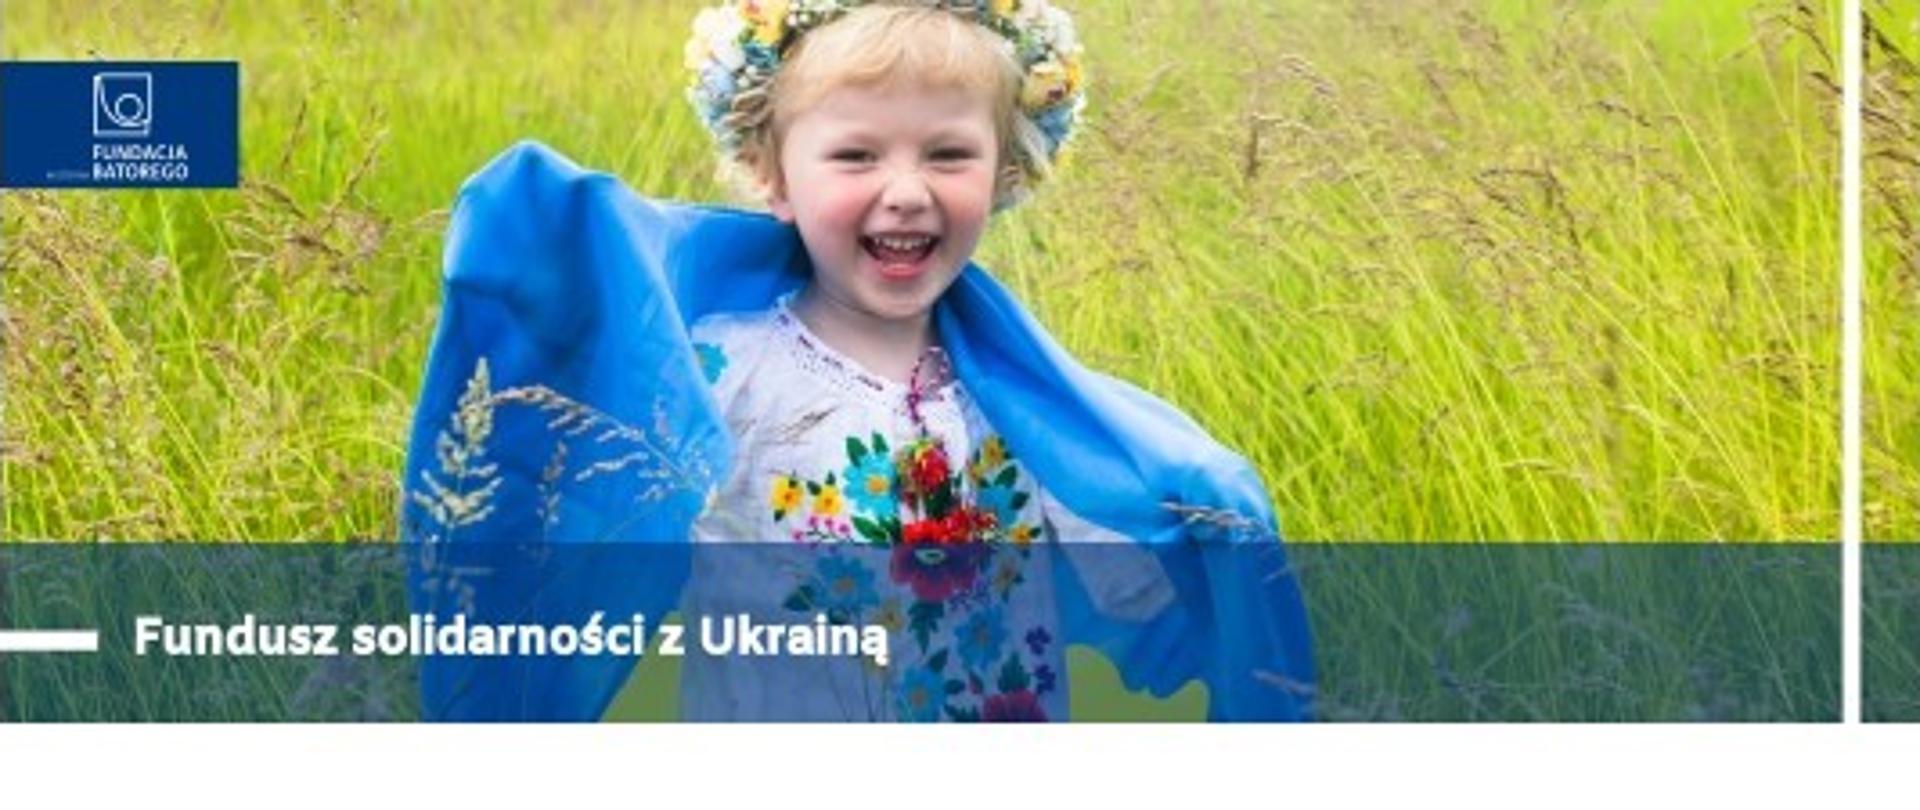 Fundusz Solidarności z Ukrainą. Fundacja Batorego. Dziewczynka w wianku z niebiesko-żółtą flagą Ukrainy. W tle bujne trawy.